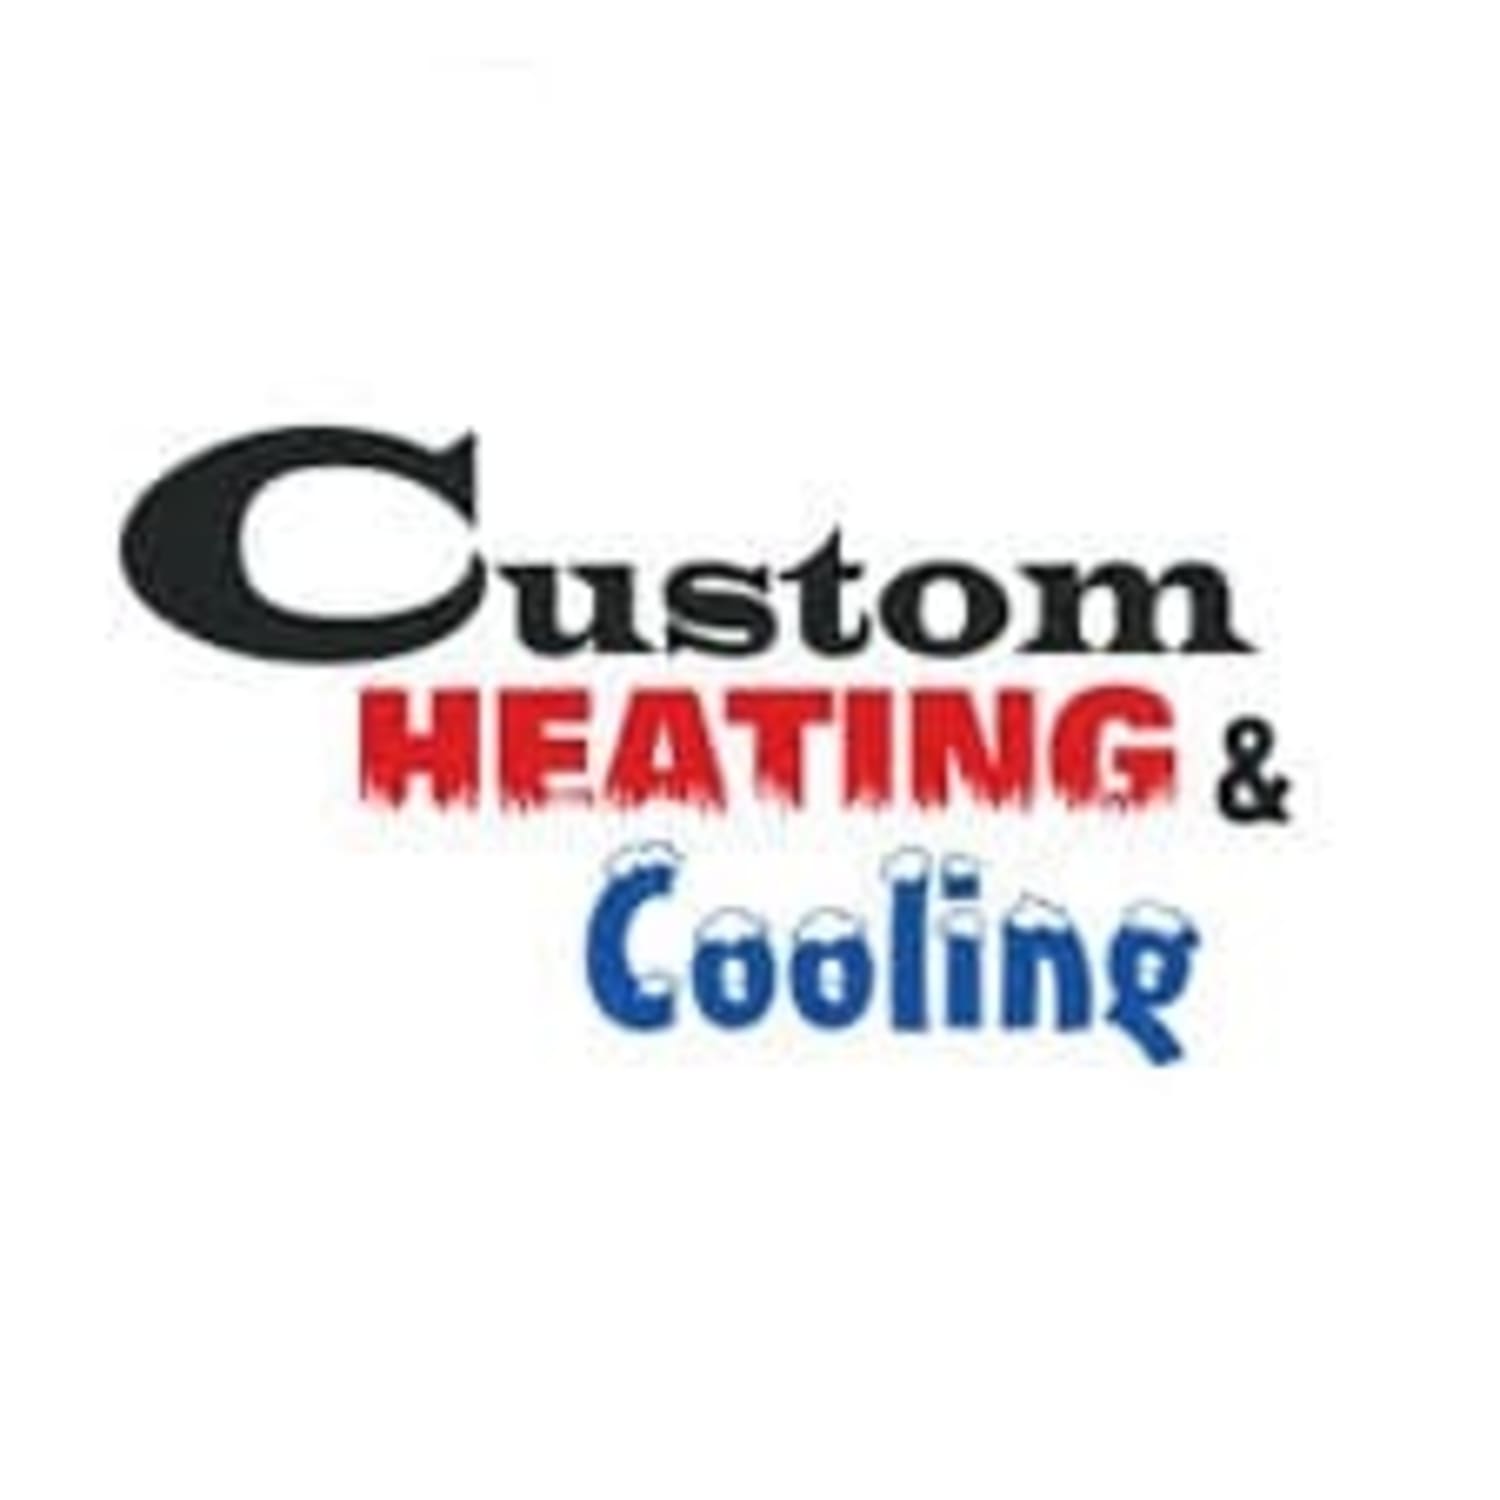 Custom Heating & Cooling